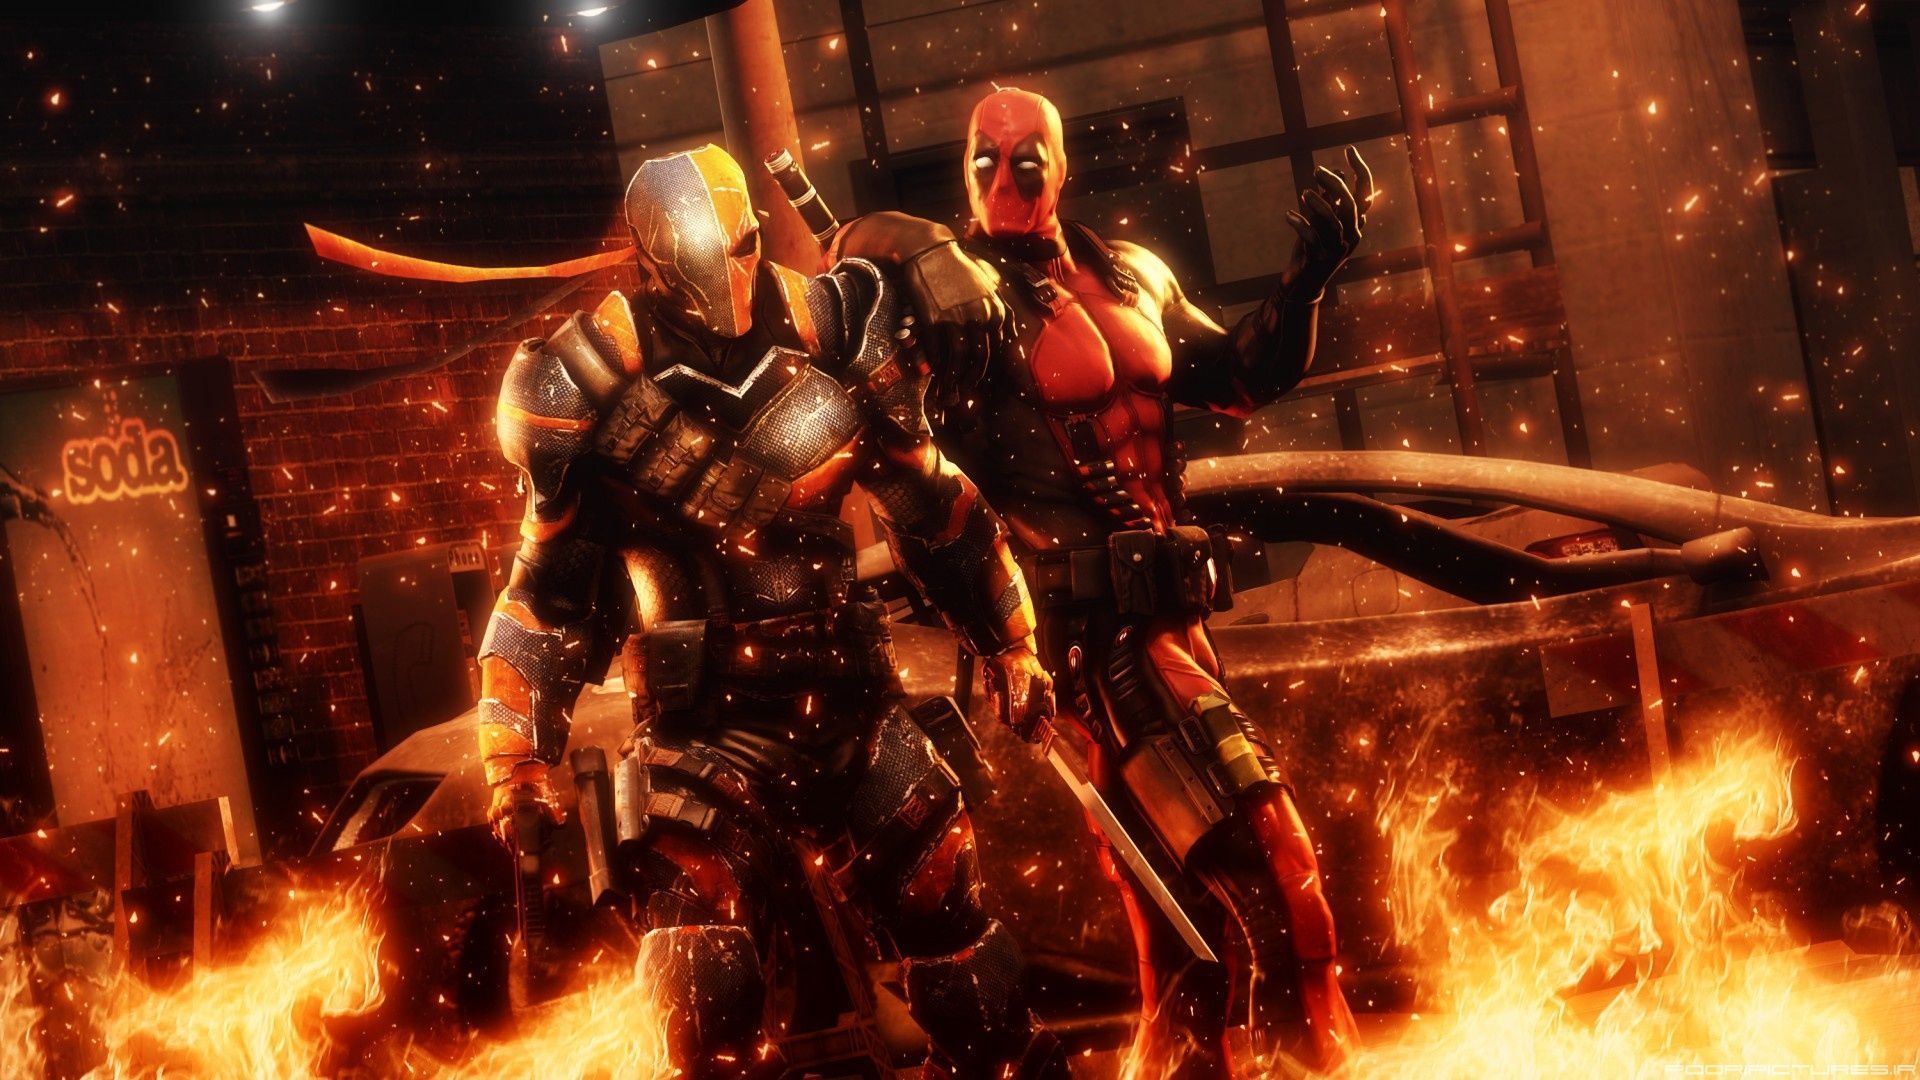 2 Deadpool Vs. Deathstroke HD Wallpapers | Backgrounds - Wallpaper ...